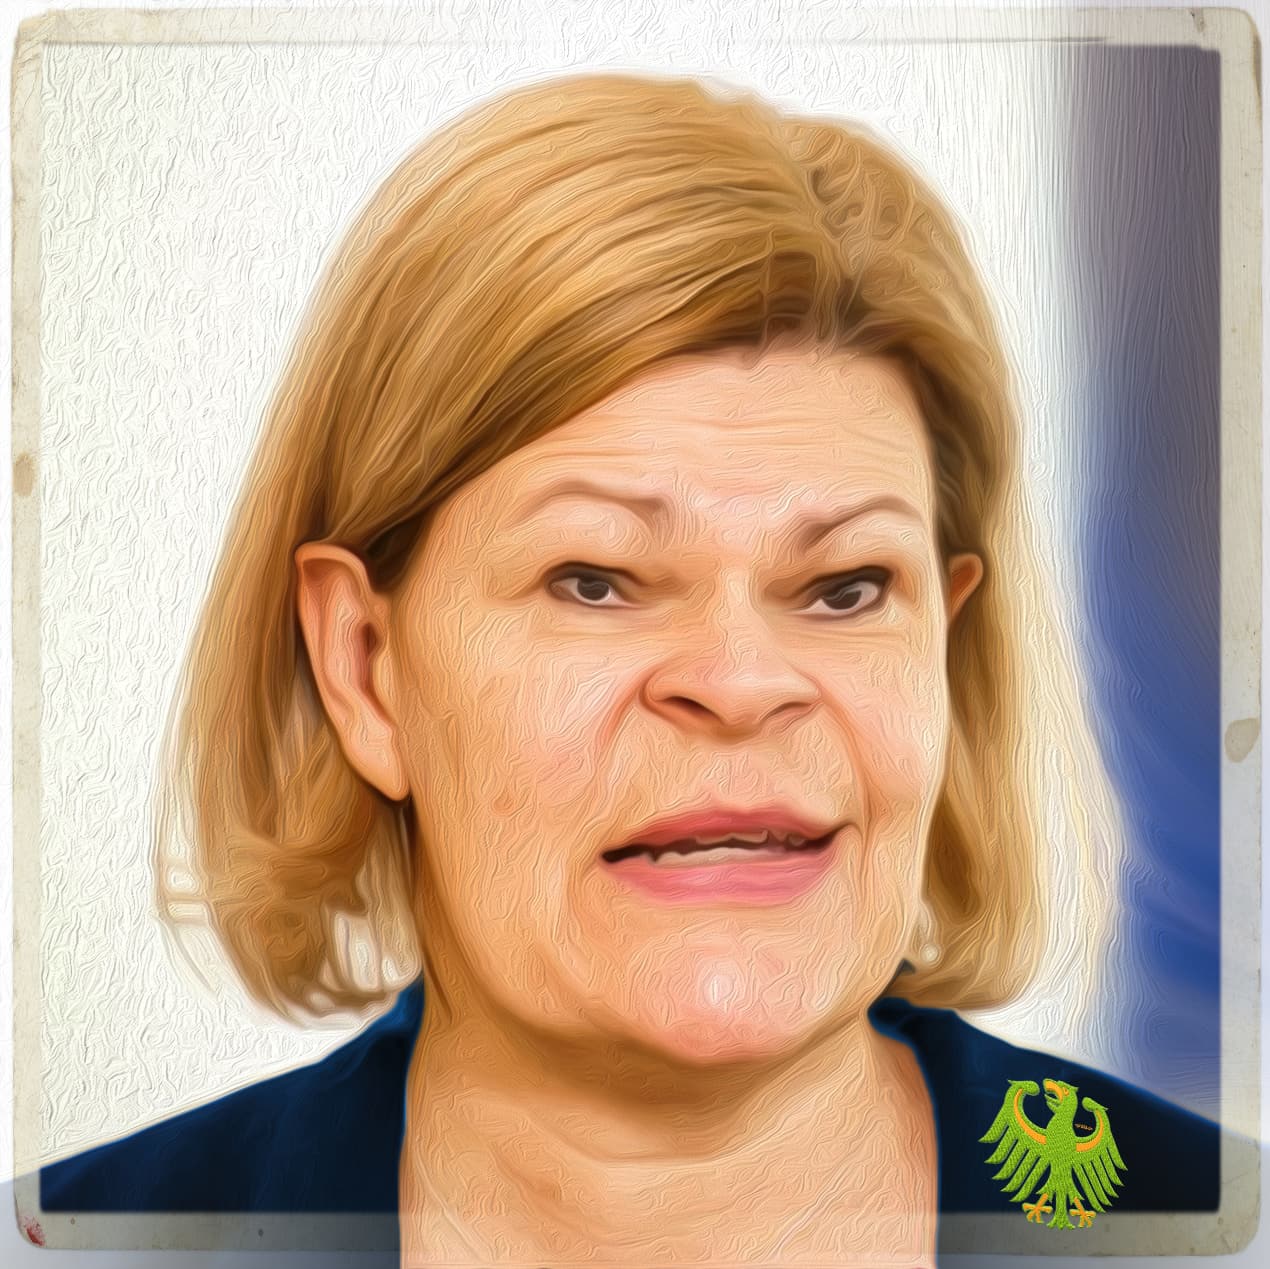 Faeser, Nancy Innenministerin BRD 2022 Kontaktschuld gruen links Adler